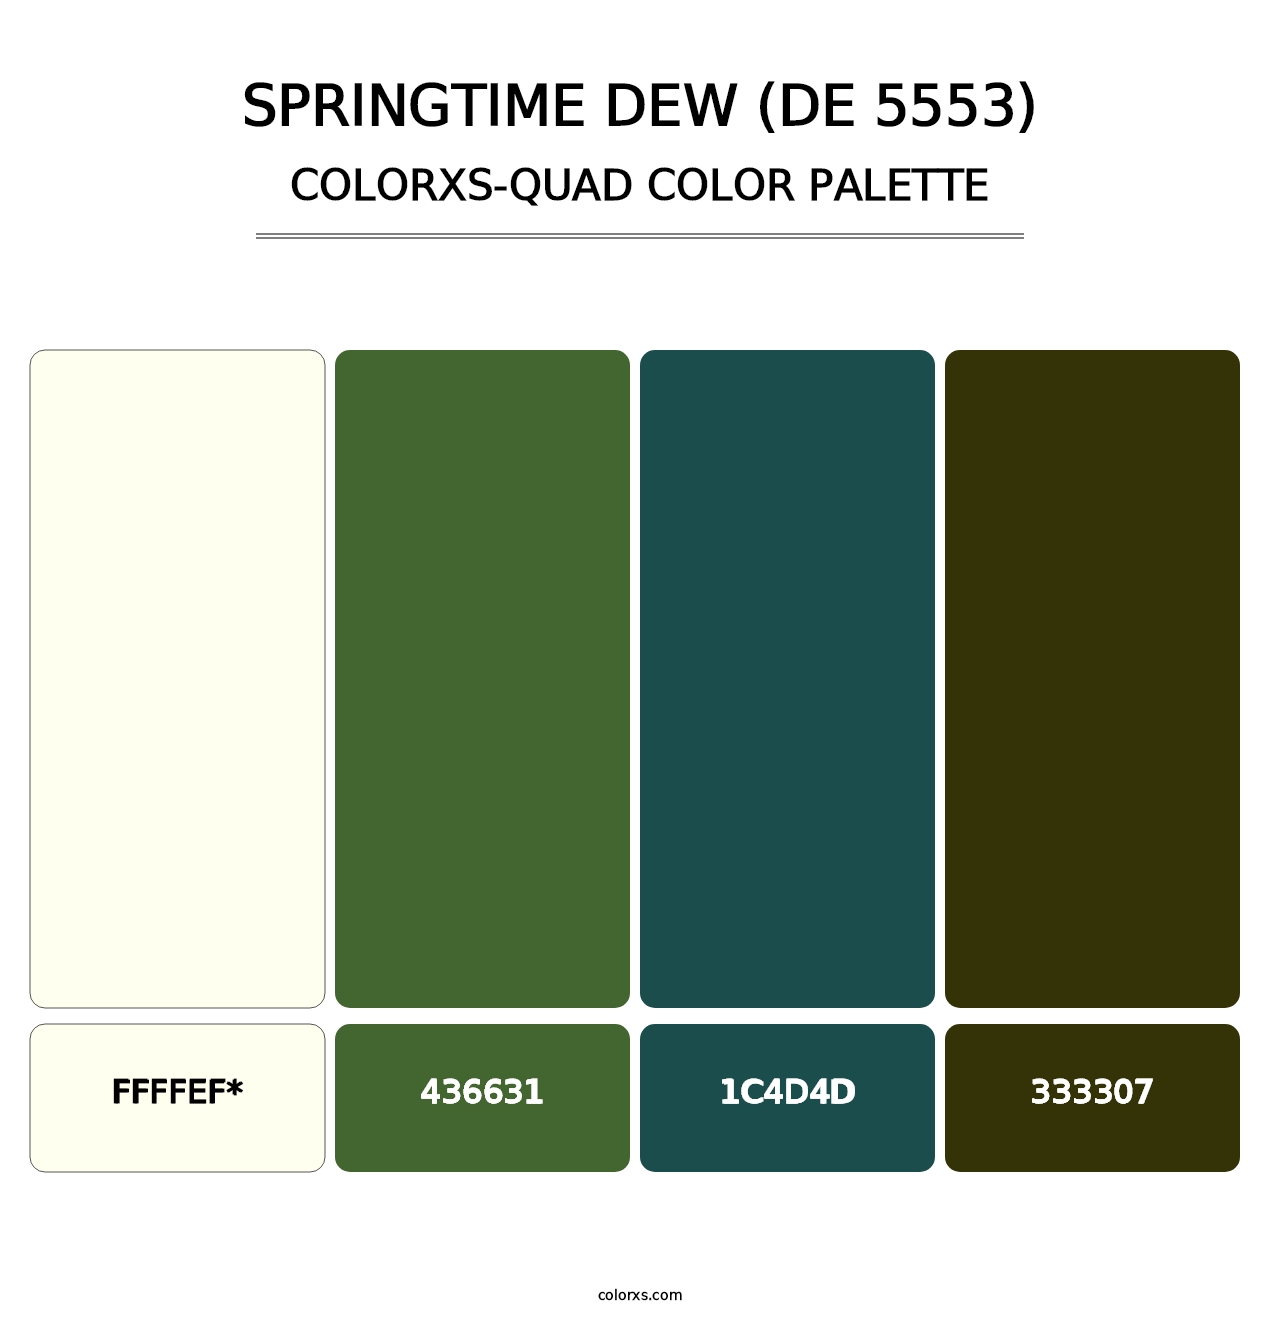 Springtime Dew (DE 5553) - Colorxs Quad Palette